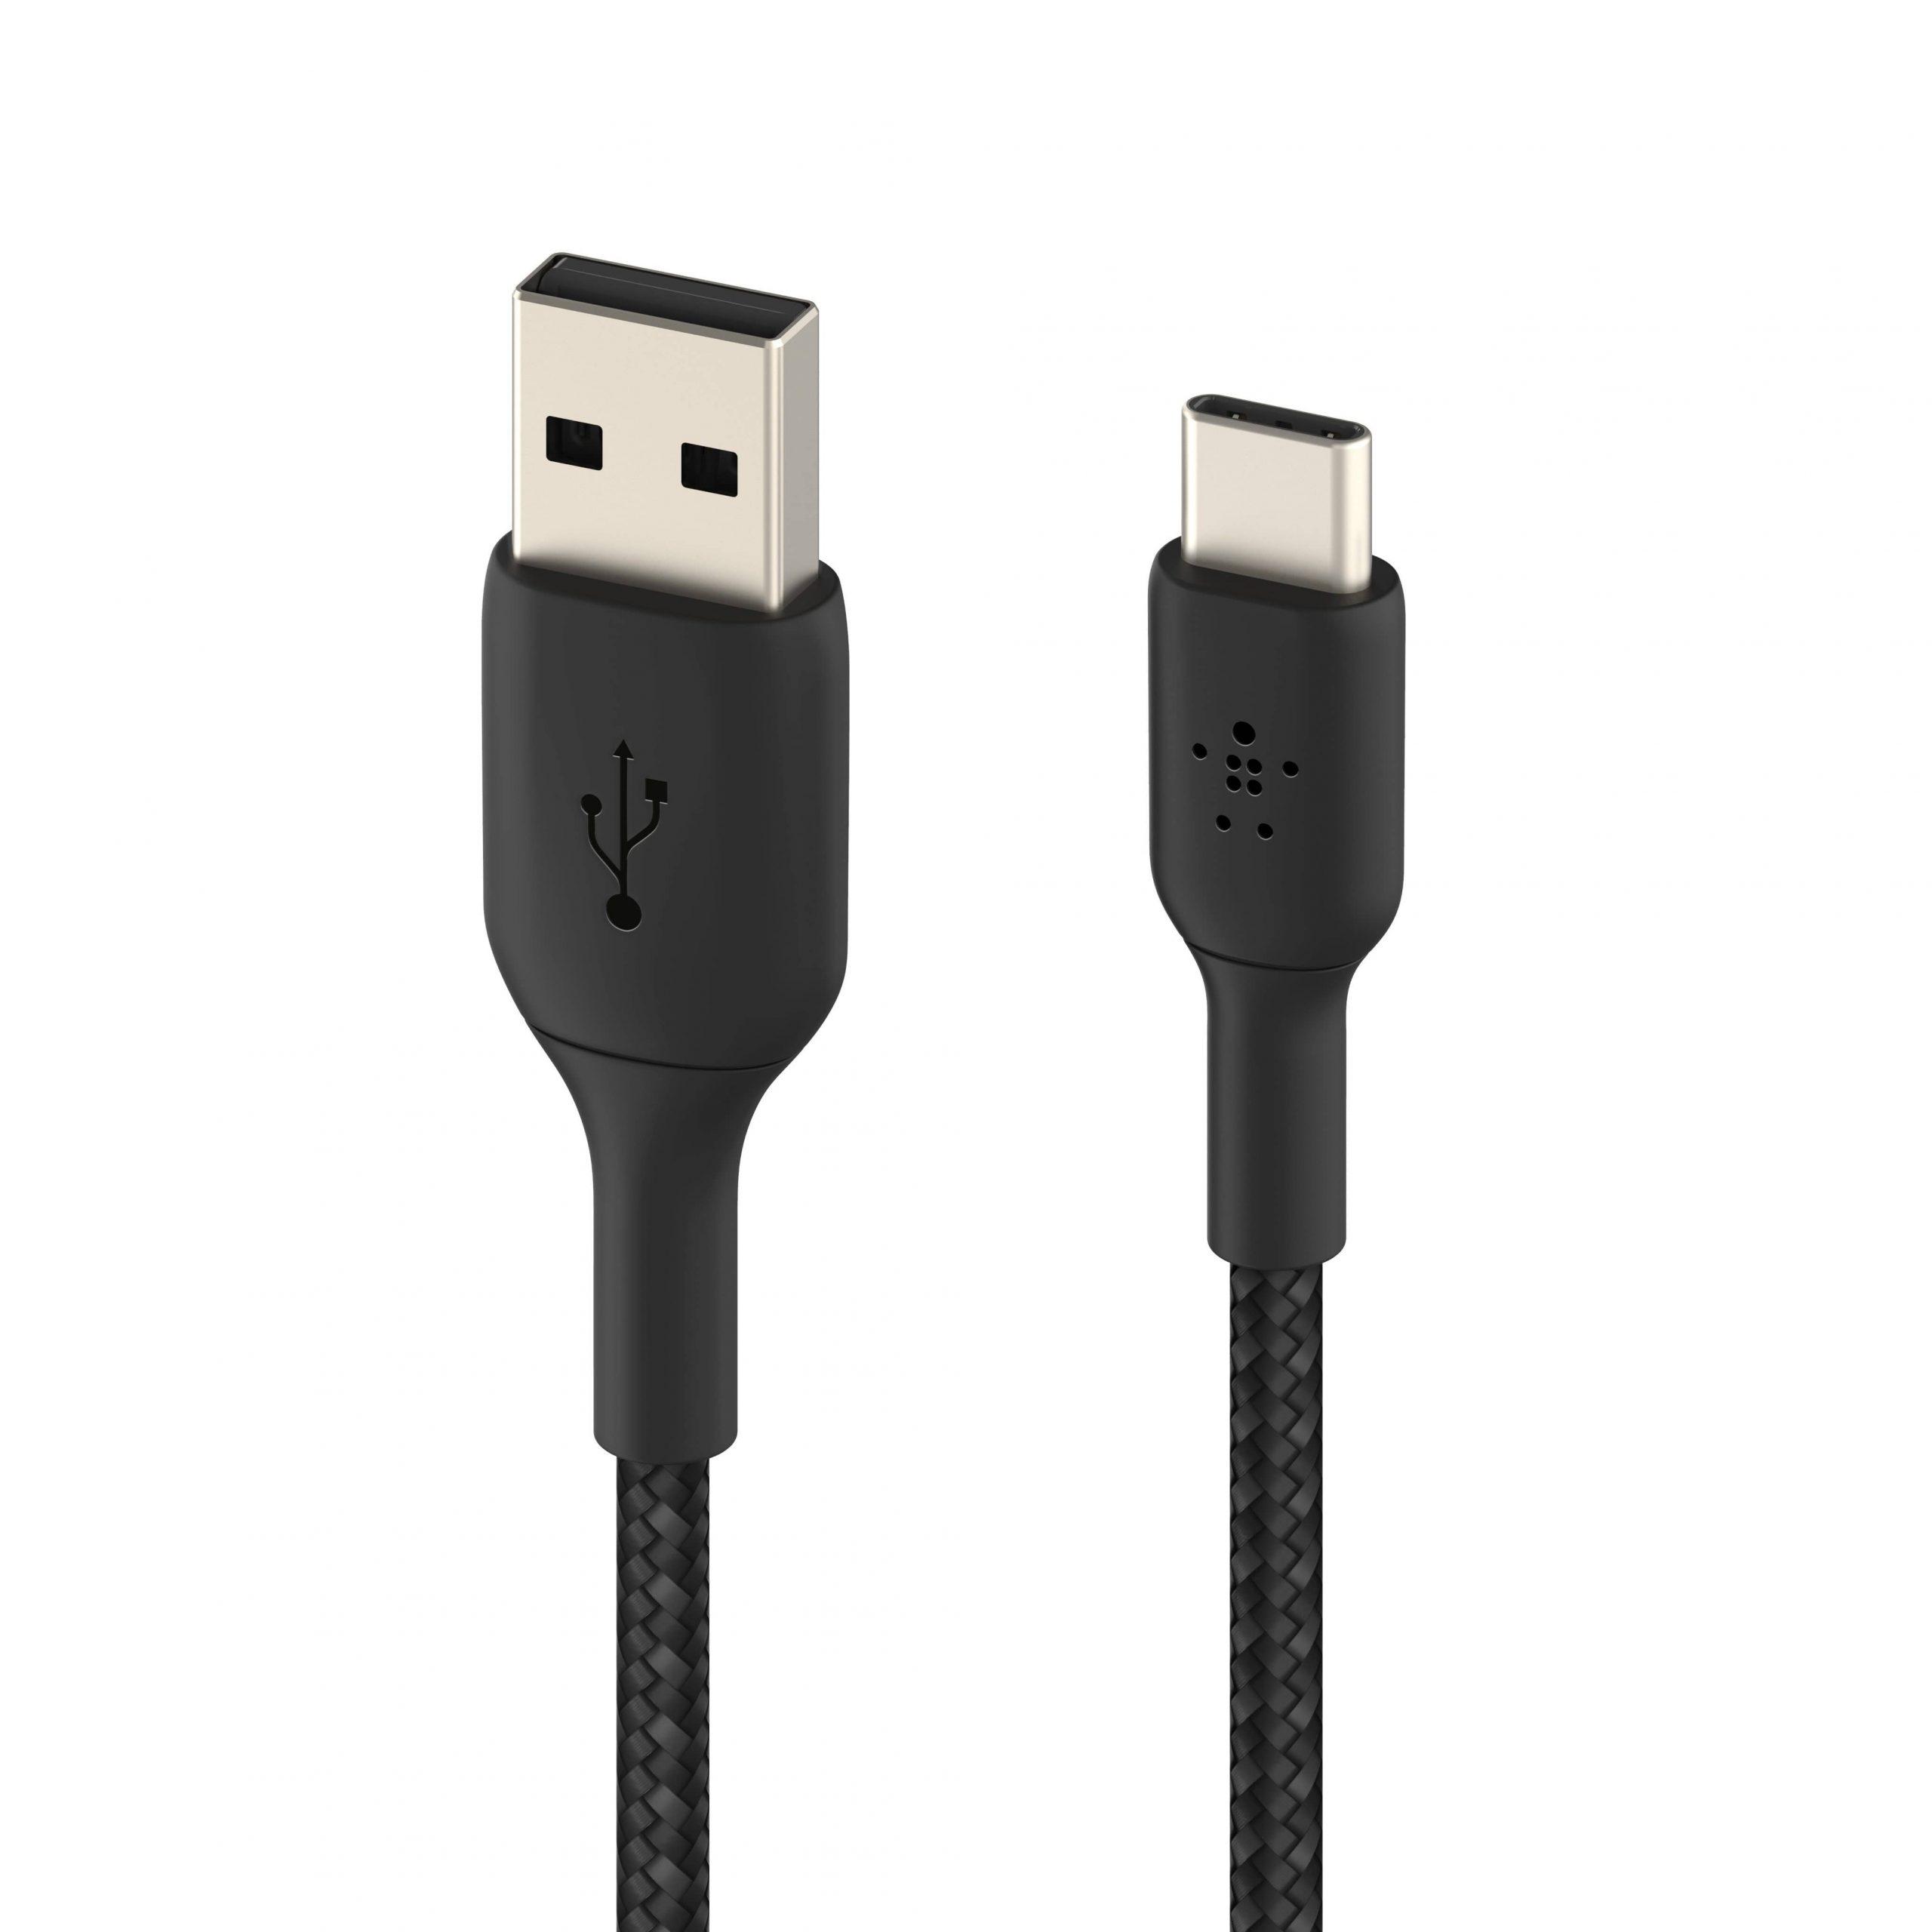 وصلة شاحن (كيبل شحن) بمنفذ USB- C إلى USB-A لون أسود 2 متر Belkin - Boost Charge USB-C to USB-A Braided Cable 2Meter - Black - cG9zdDo1NTc4MQ==